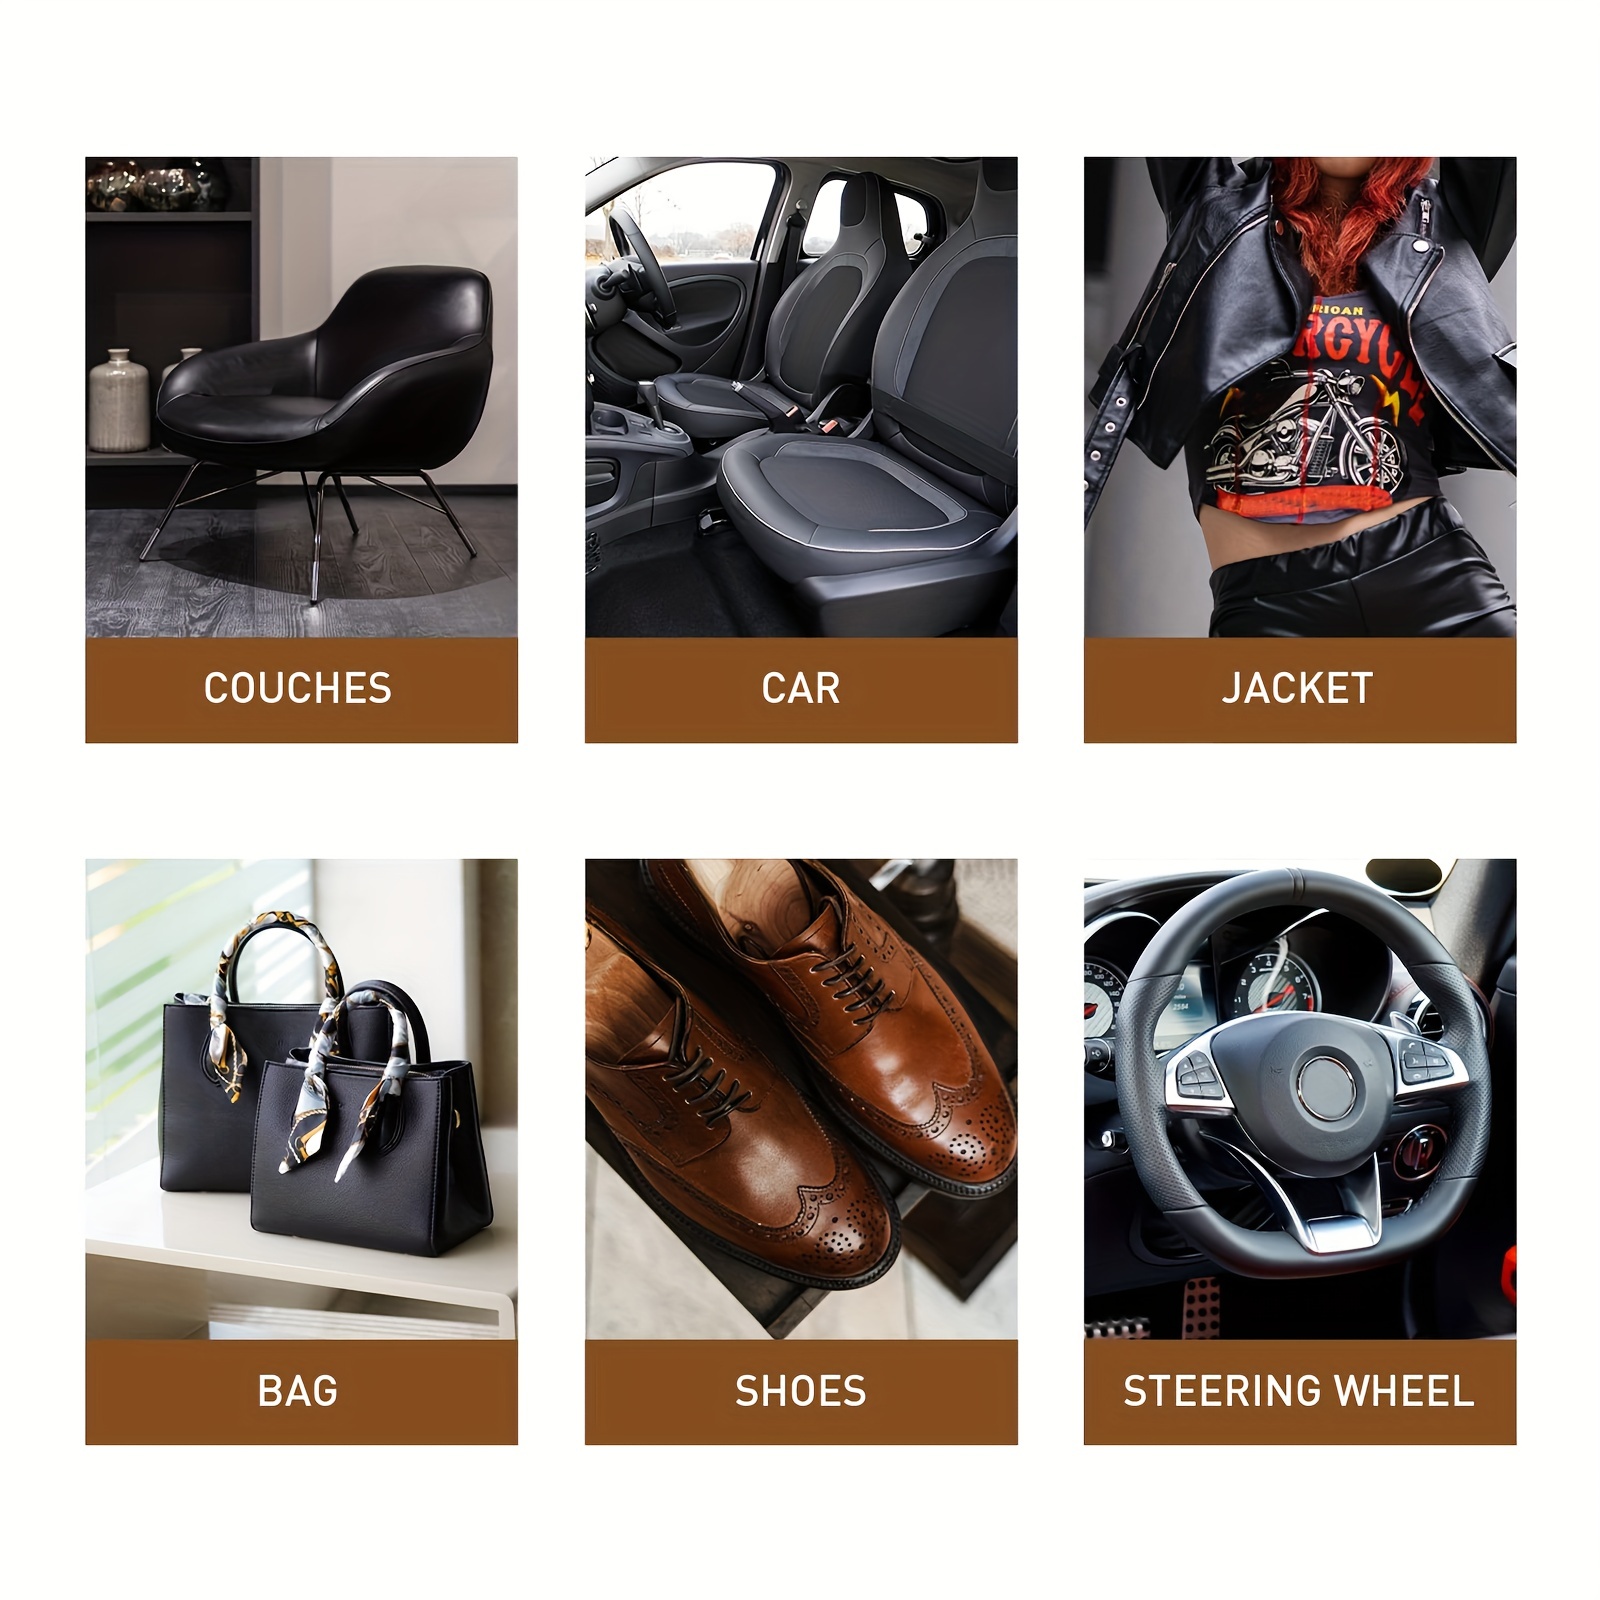 KIWI Black Shoe Polish-Shoe Dye Leather Restorer Boots Jacket Couch Jacket  4 pk